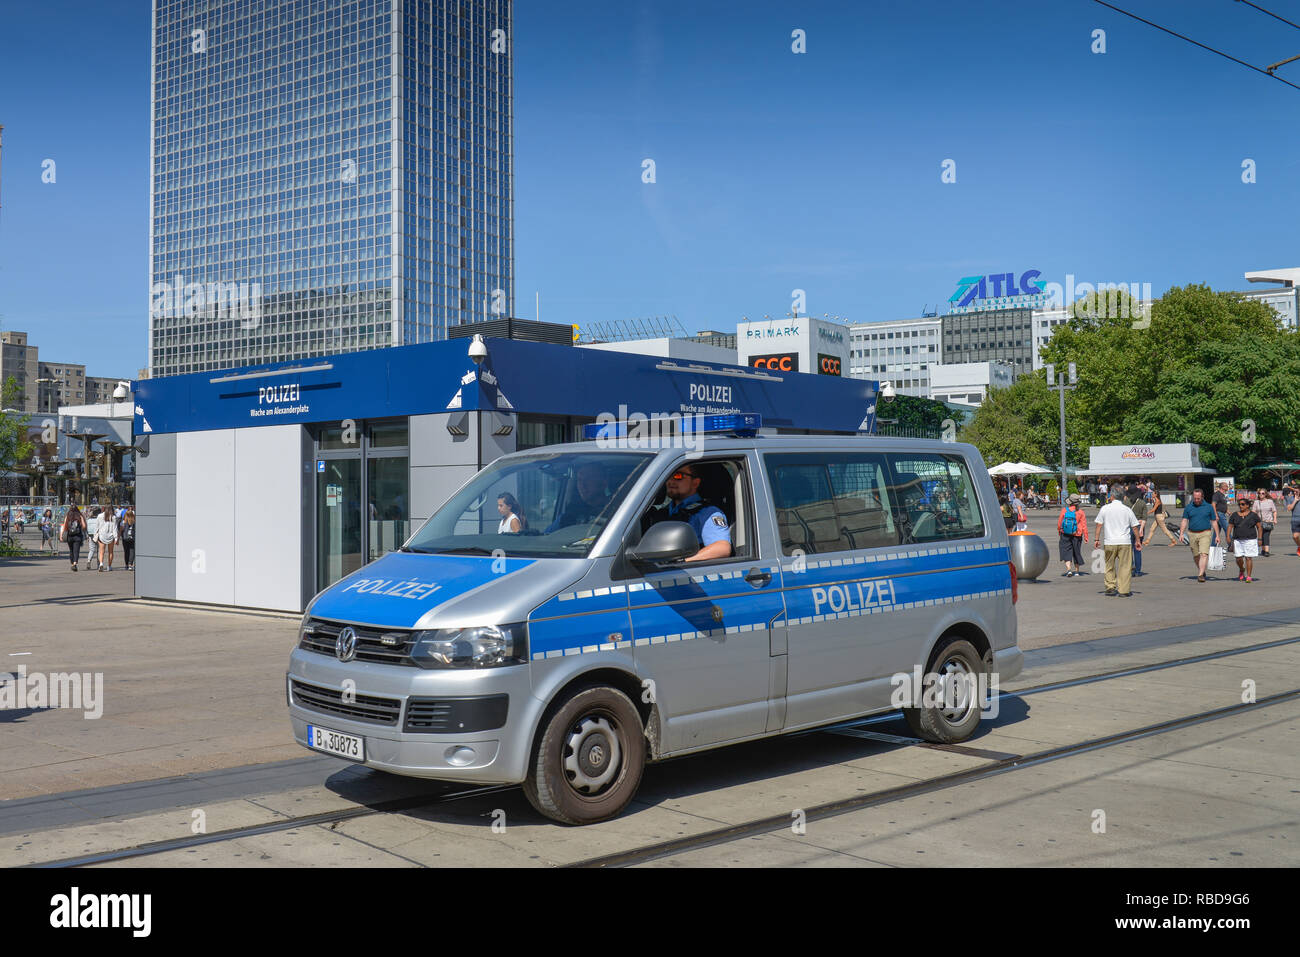 Polizeistation, Alexander's Place, Mitte, Berlin, Deutschland, Polizeiwache, Alexanderplatz, Mitte, Deutschland Stockfoto